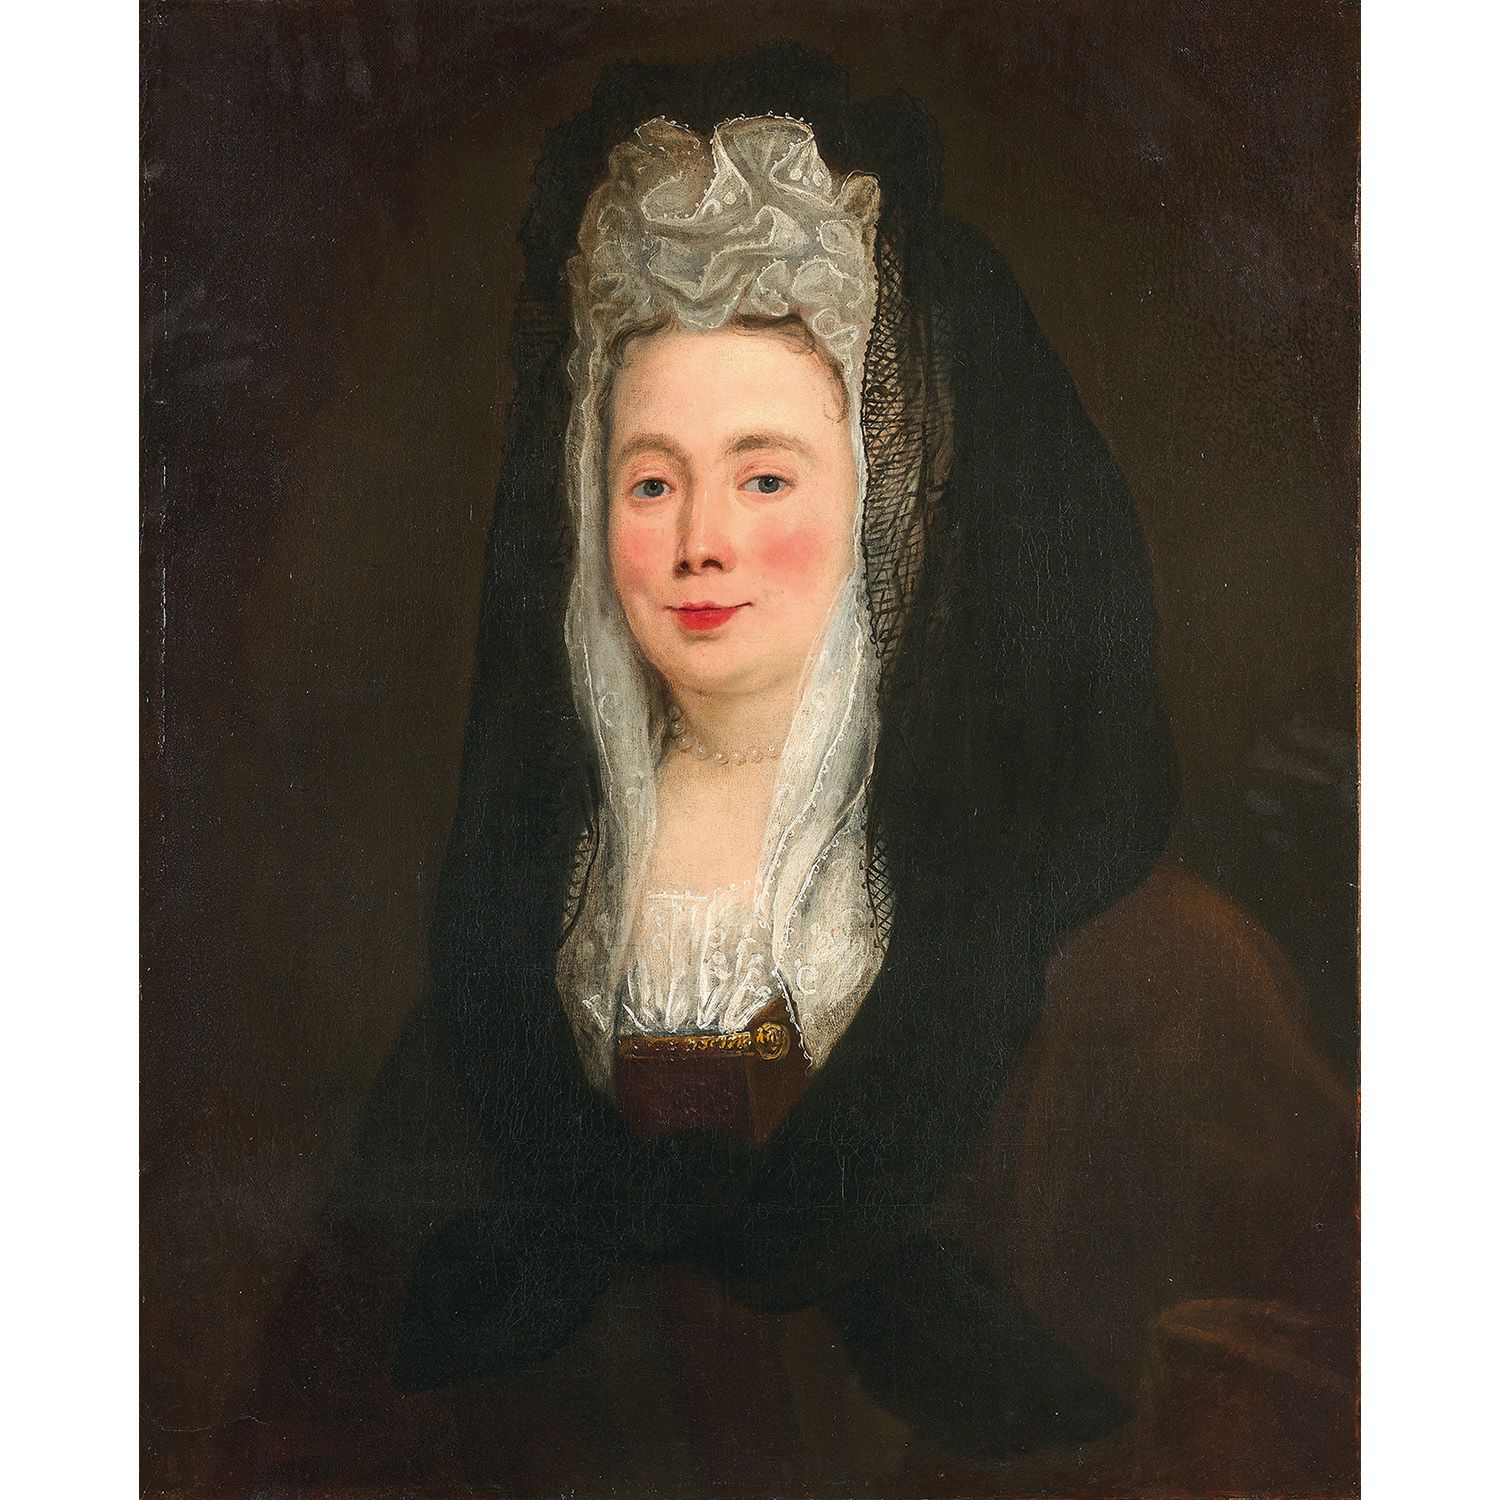 Null 法国学校约1700年
戴着蕾丝头饰的女人肖像
长方形画布，以前是椭圆形的
无框架
旧的修复
法国学校约1700年，戴着花边头饰的女士肖像，长方形帆布，&hellip;